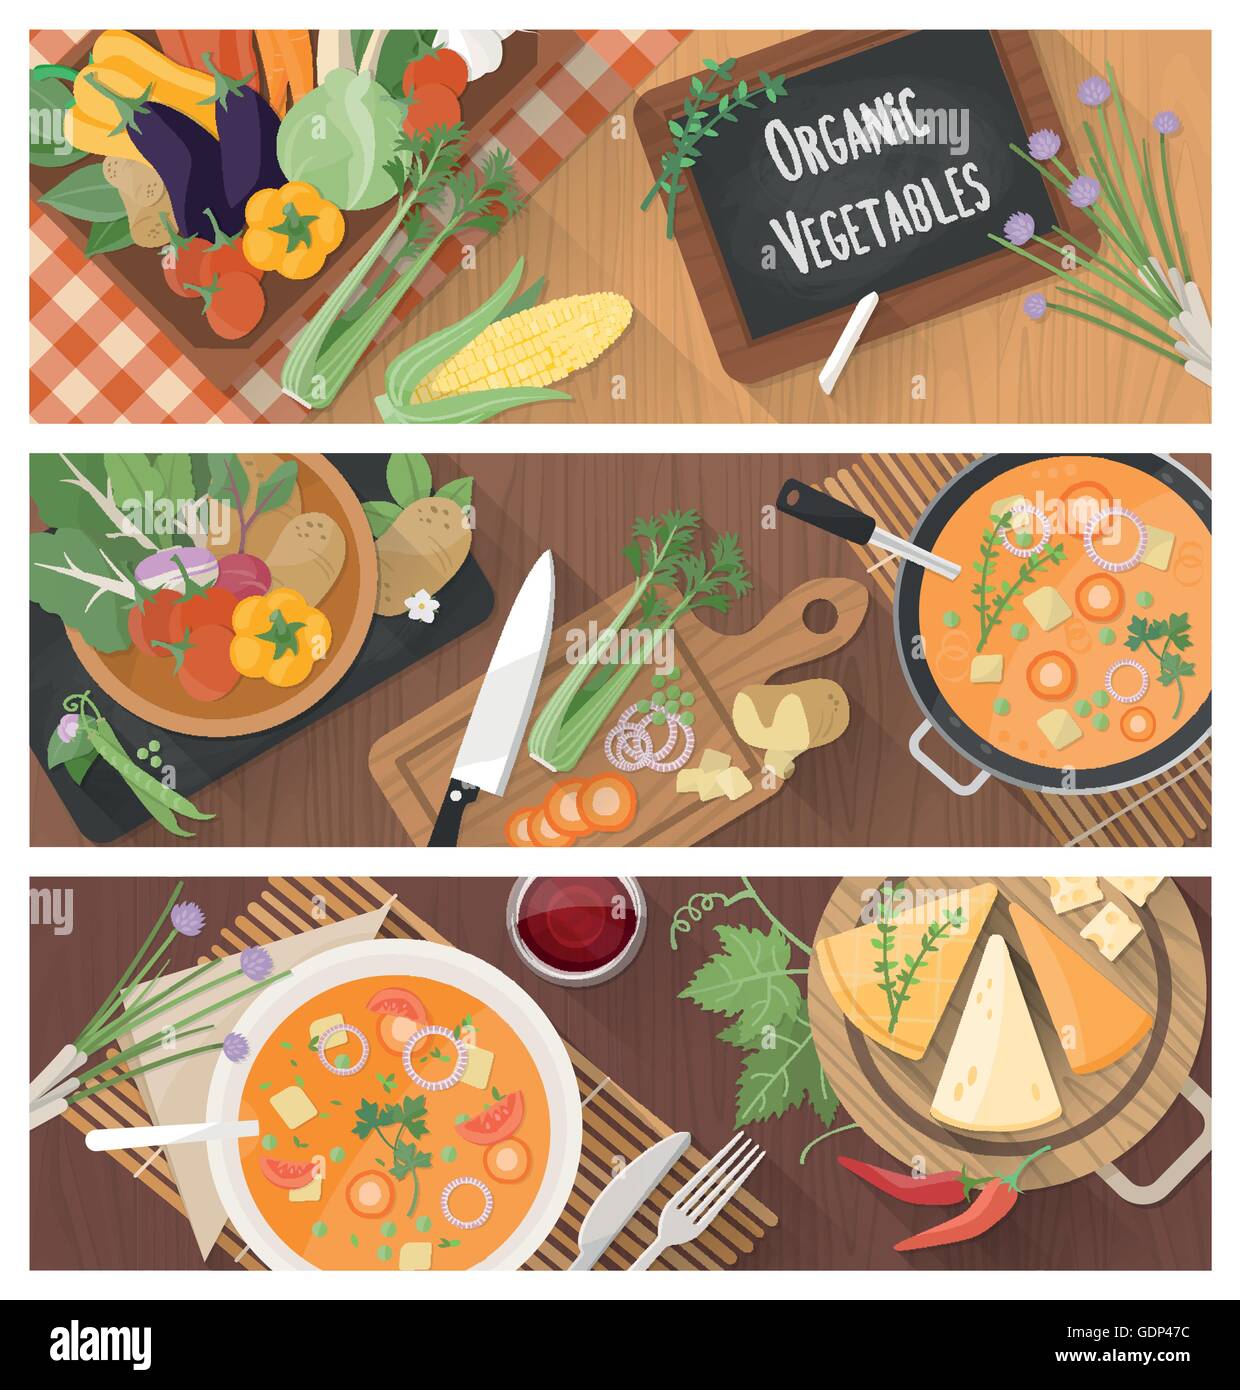 La cuisine et la saine alimentation banner set avec recette de soupe savoureuse et la préparation des aliments à la maison Illustration de Vecteur